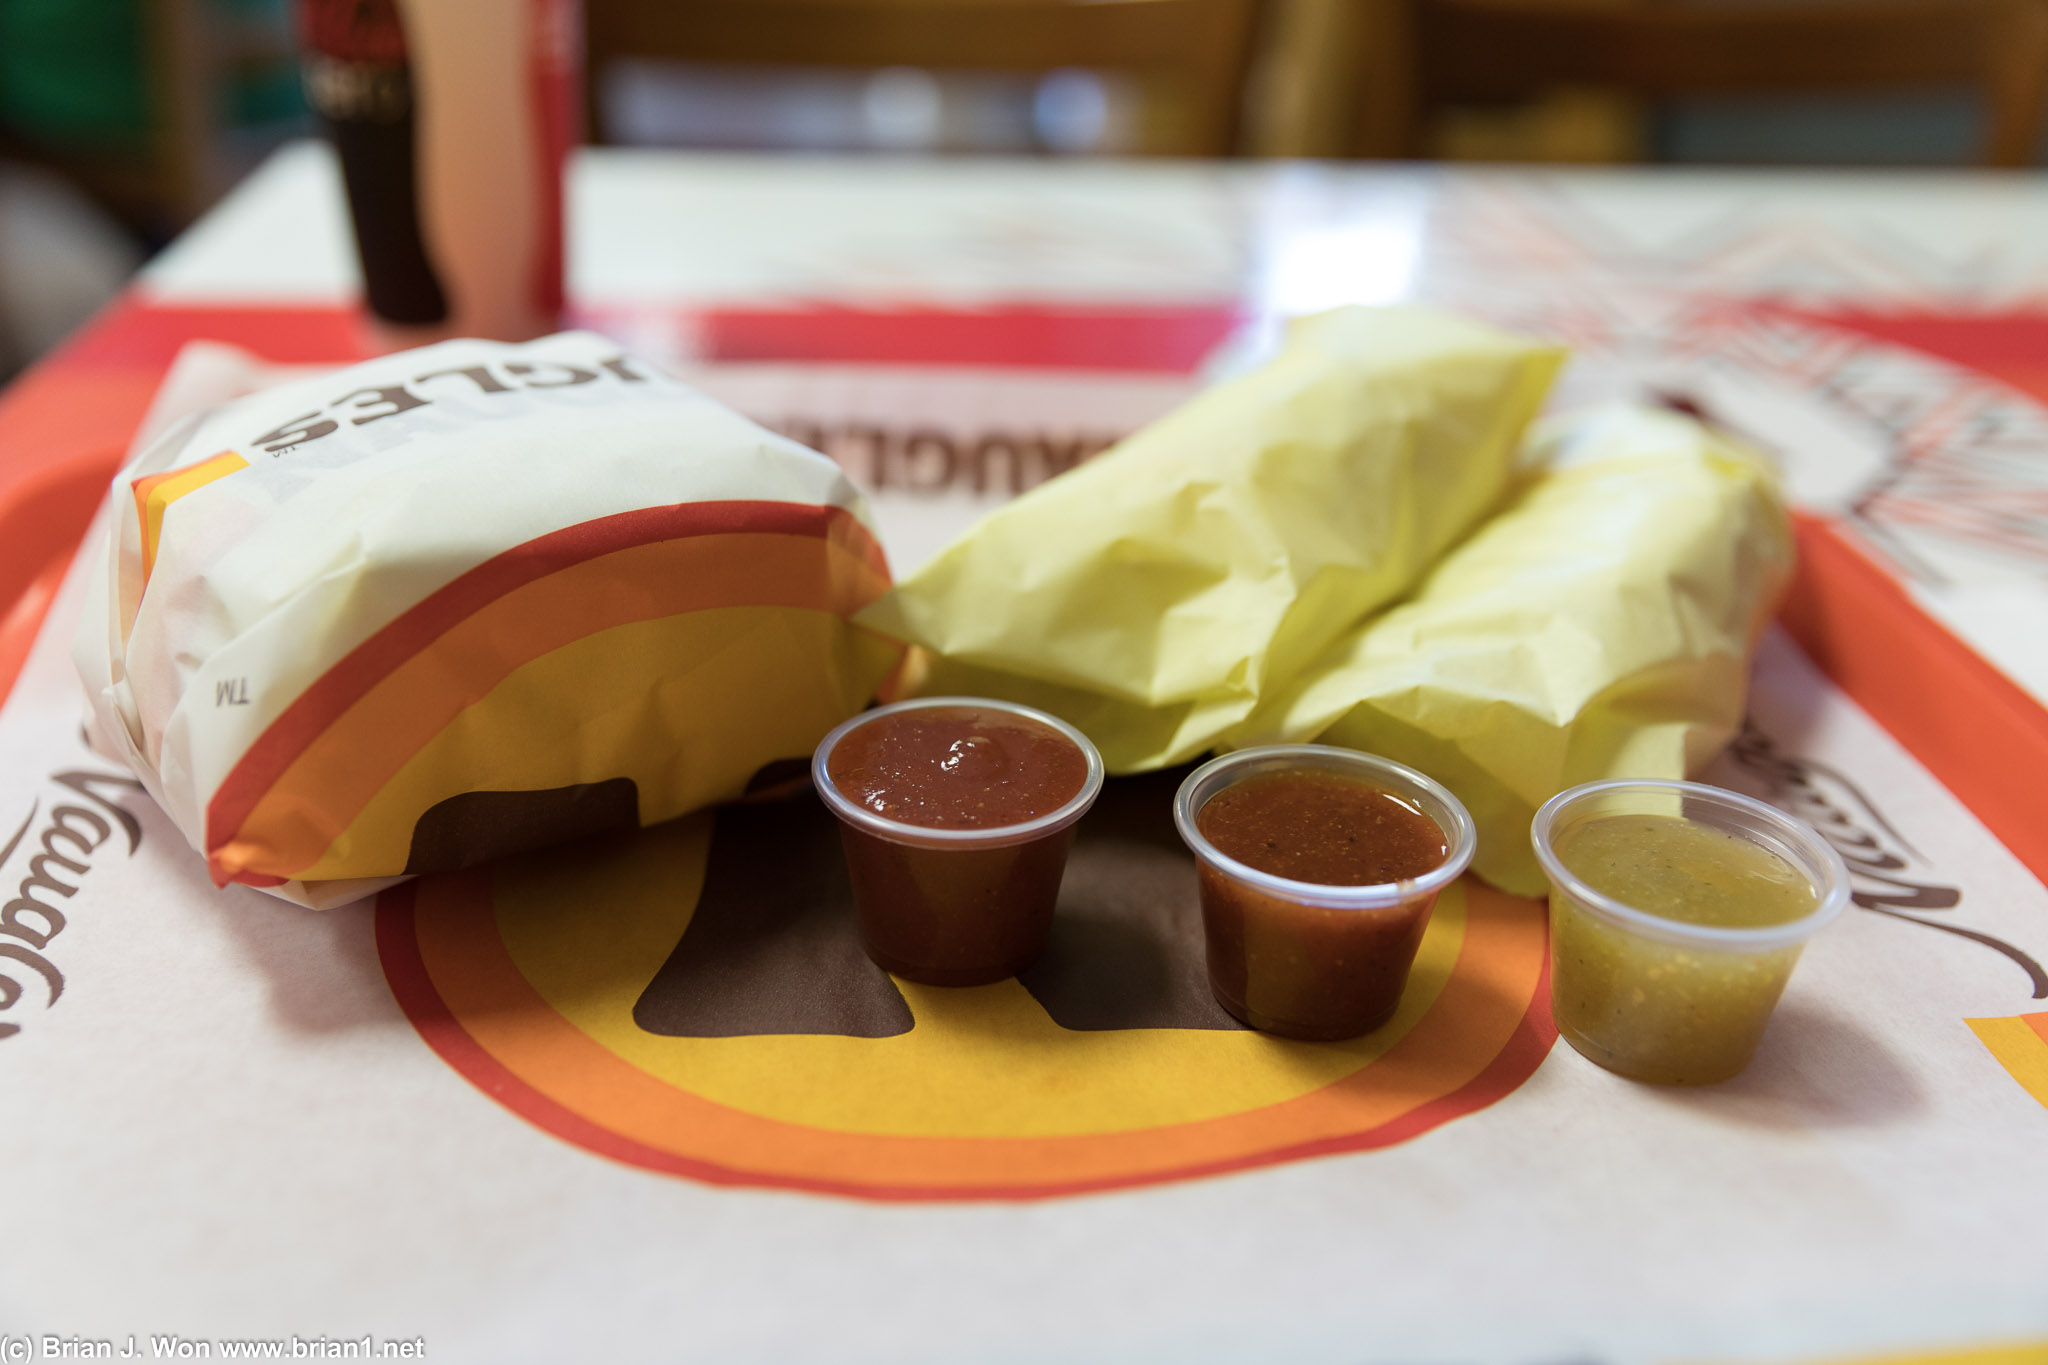 Bun taco, special taco, and original taco.